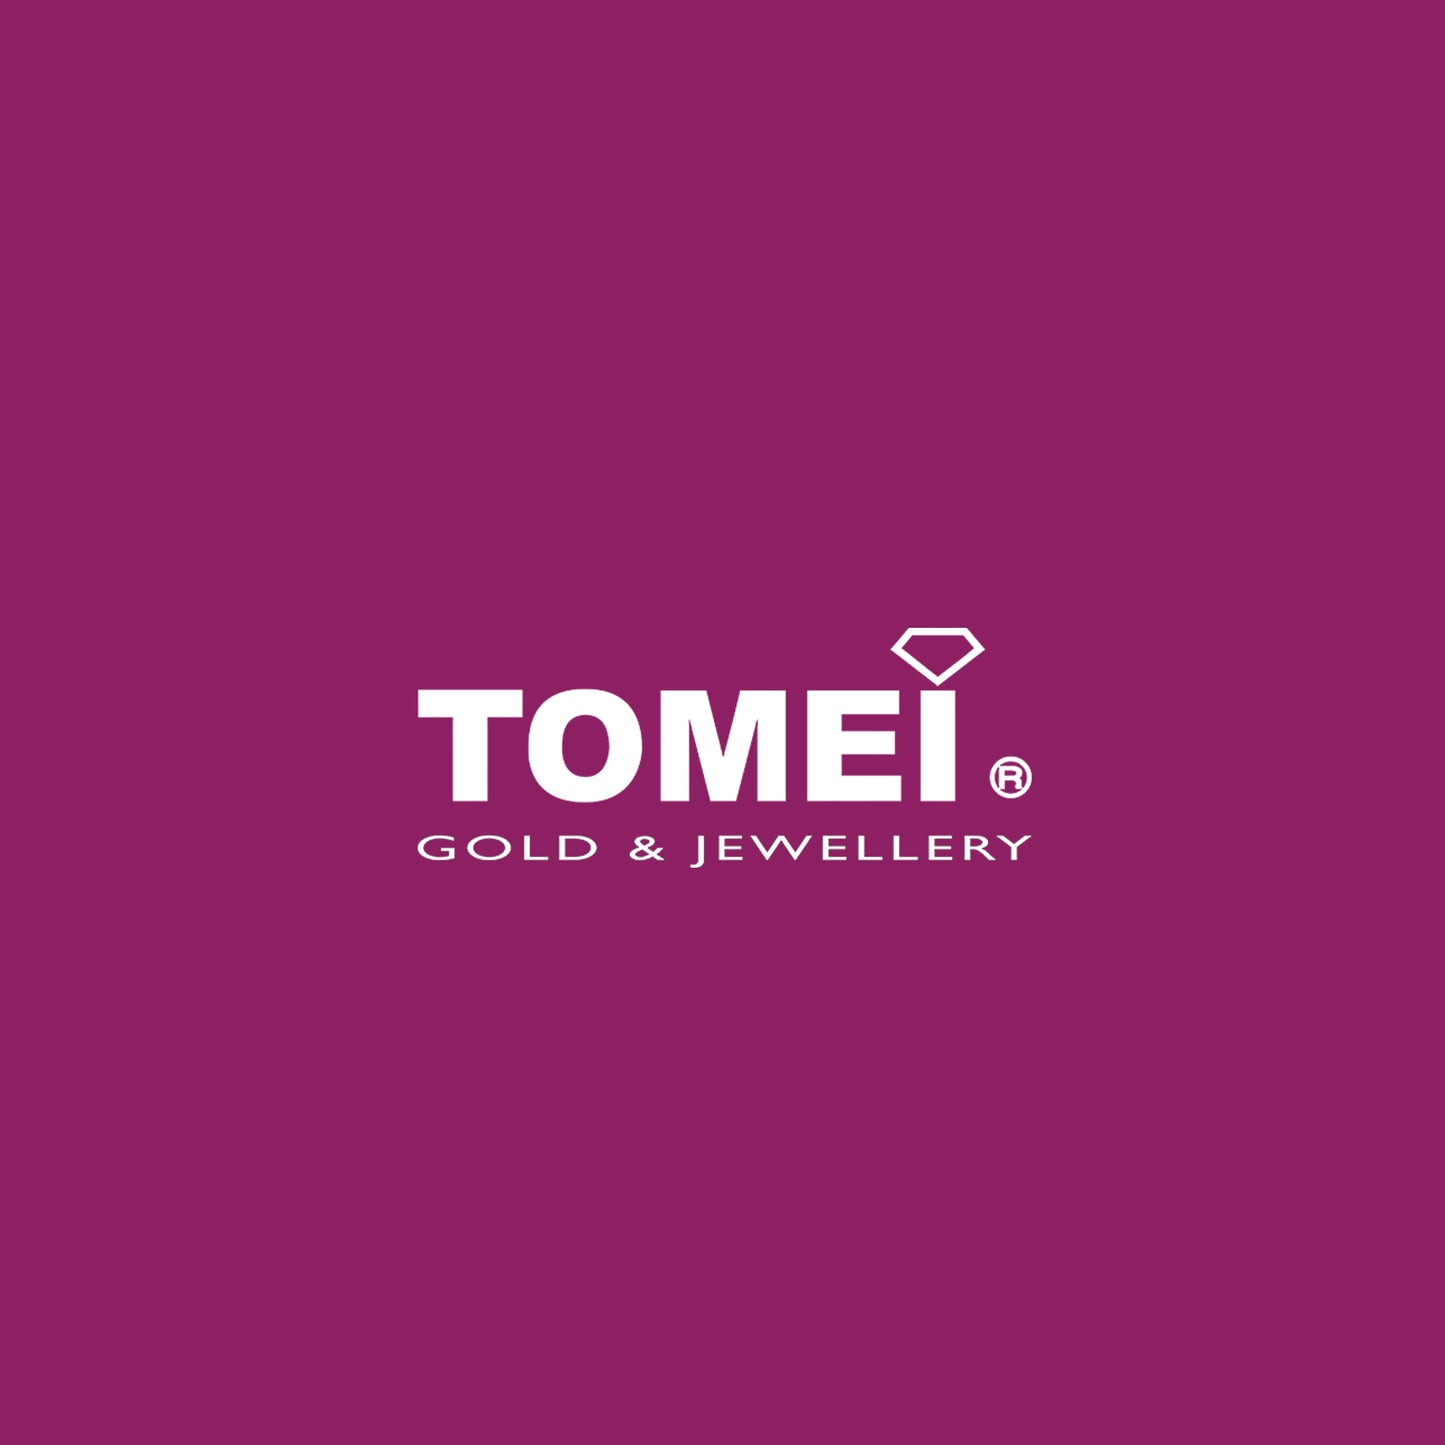 TOMEI Ring, Diamond White Gold 750 (R4017)